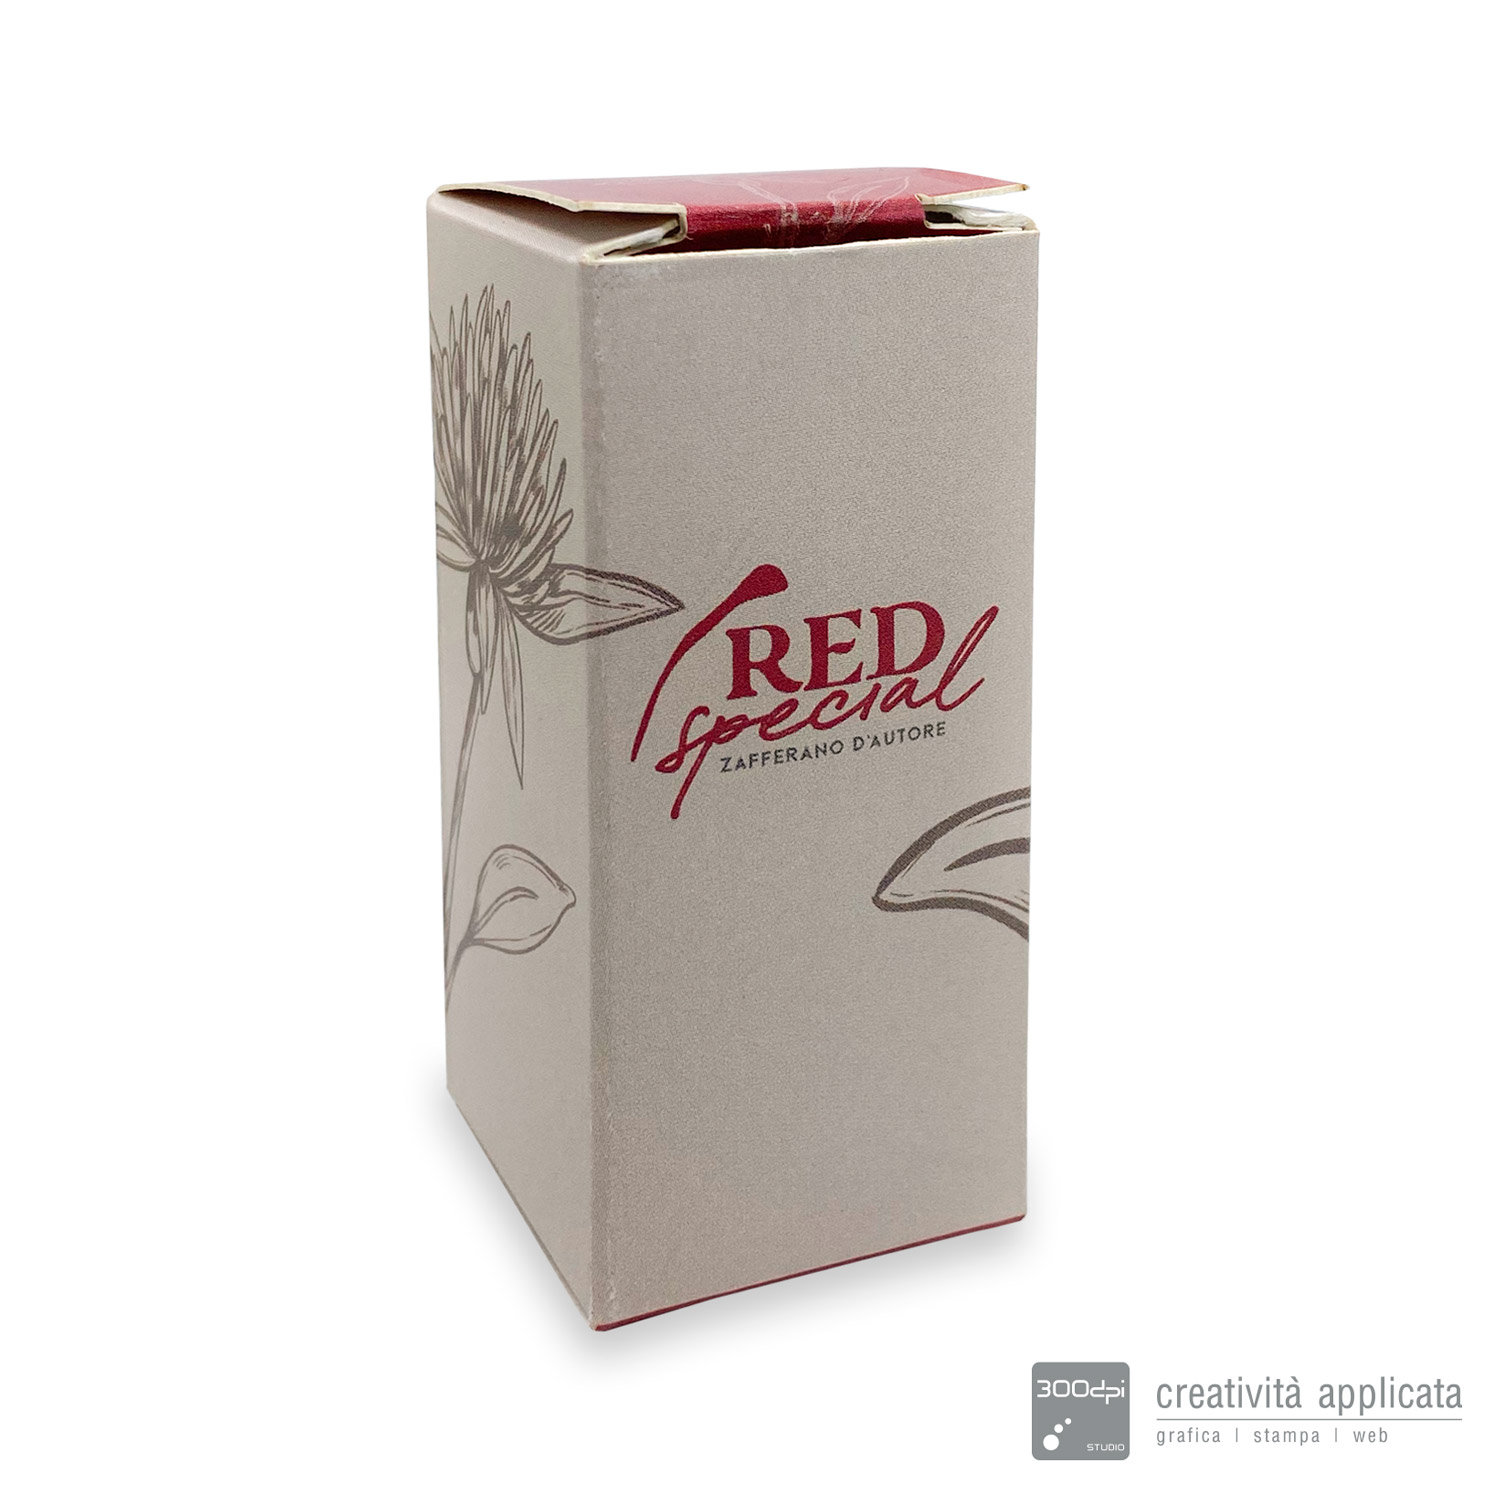 Scatole personalizzate - RED special - 300dpi STUDIO